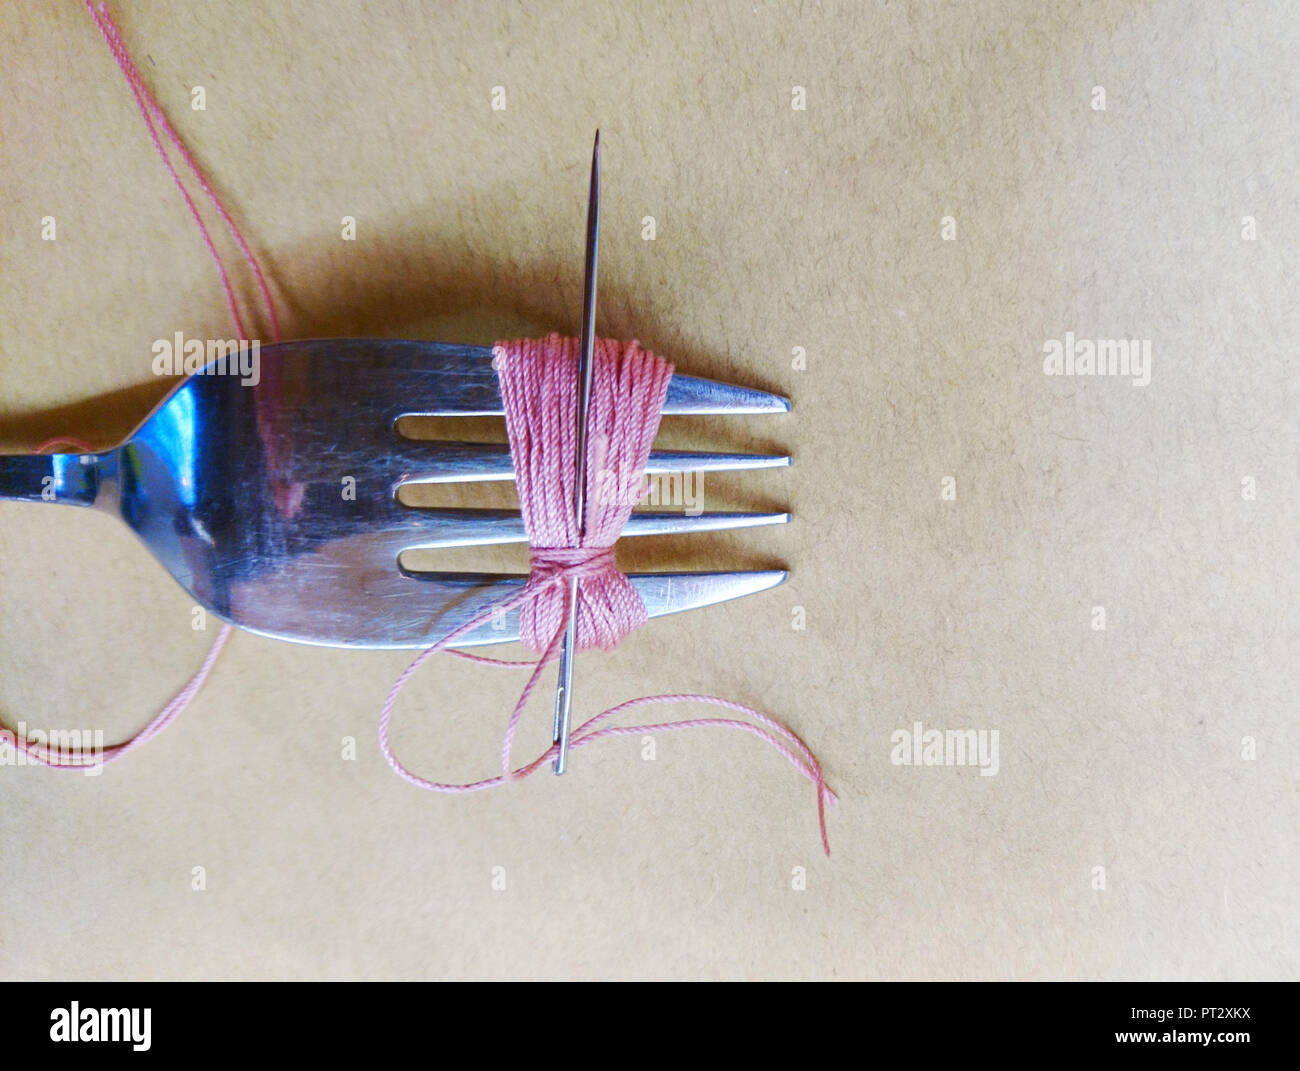 DIY, tassel, yarn, fork Stock Photo - Alamy